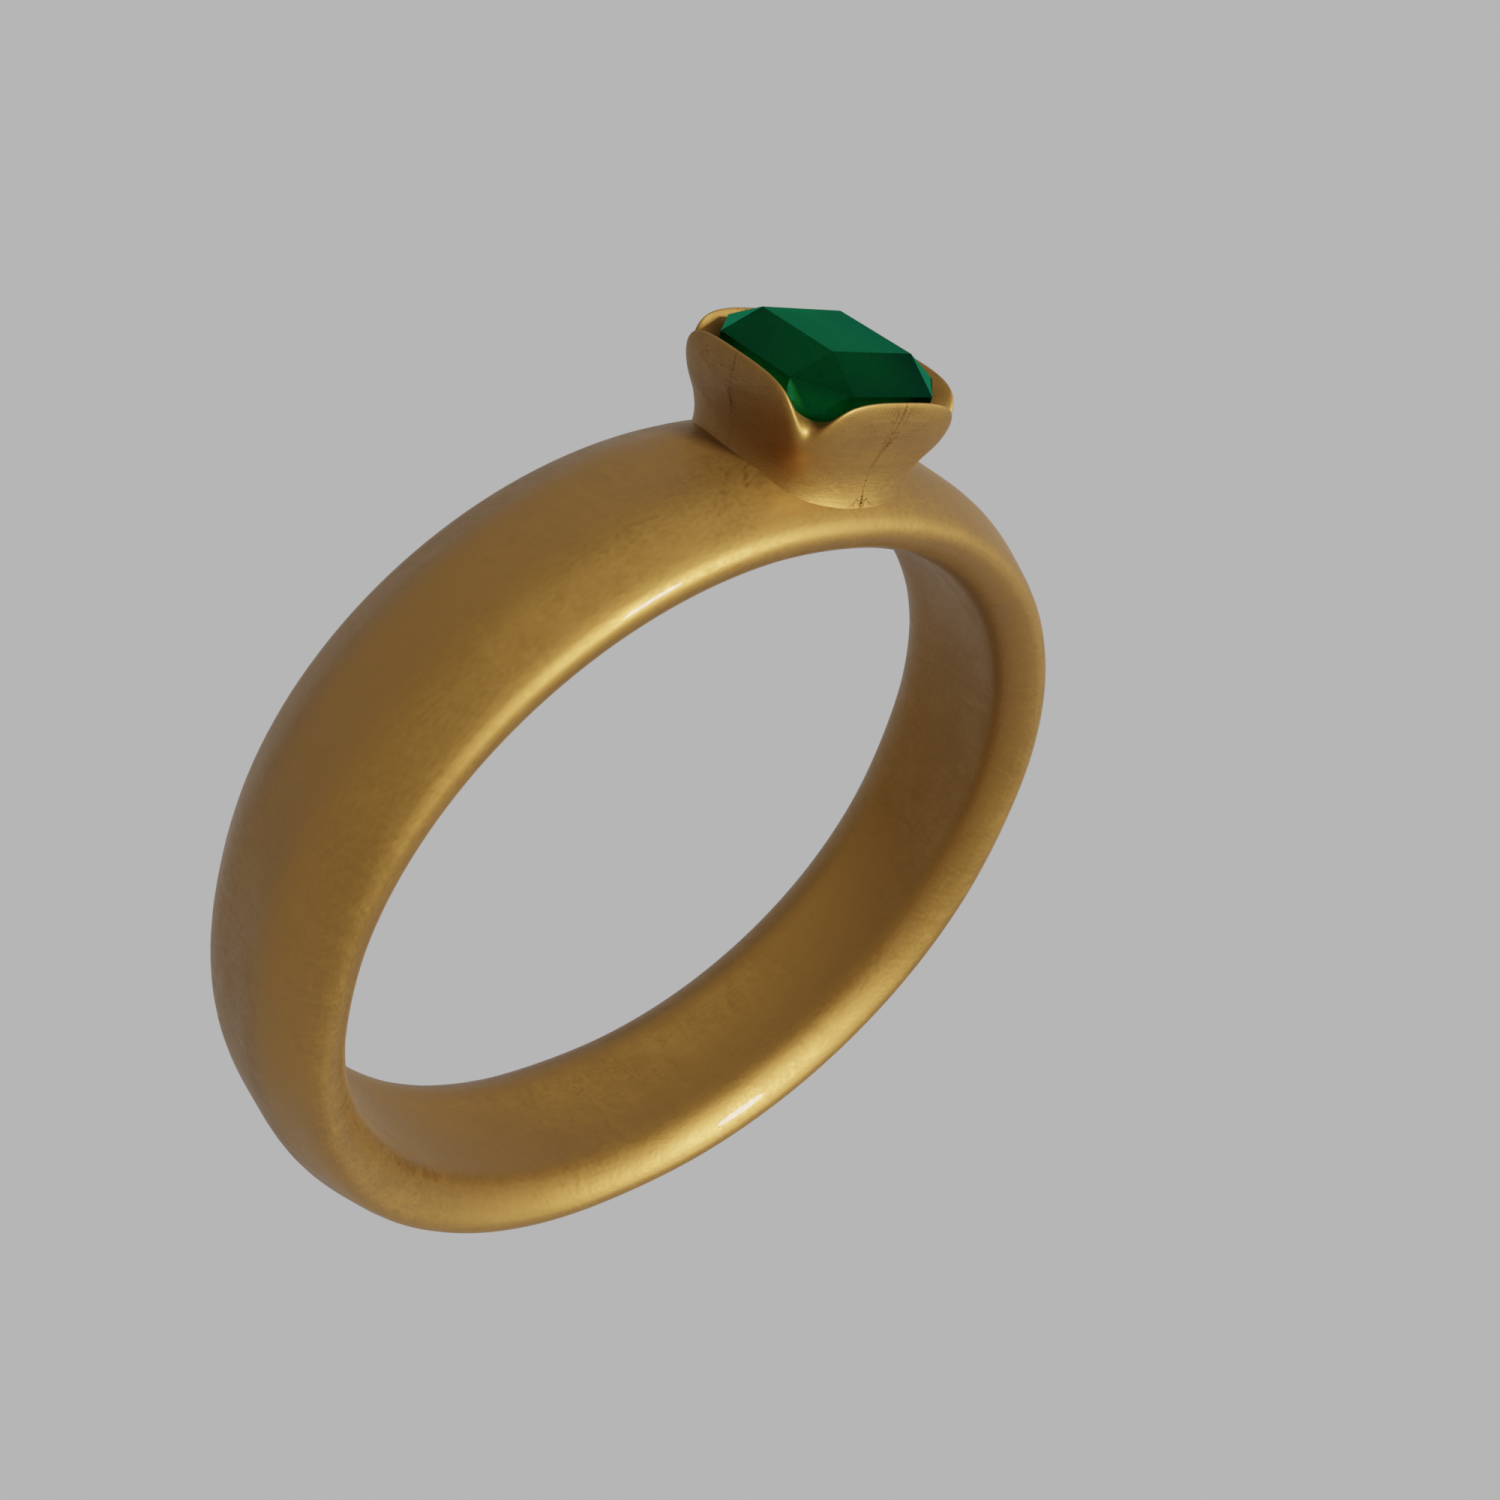 Astro Tips: सोने की अंगूठी धनवान के साथ बना सकती है कंगाल! जानें किस उंगली  में पहना शुभ